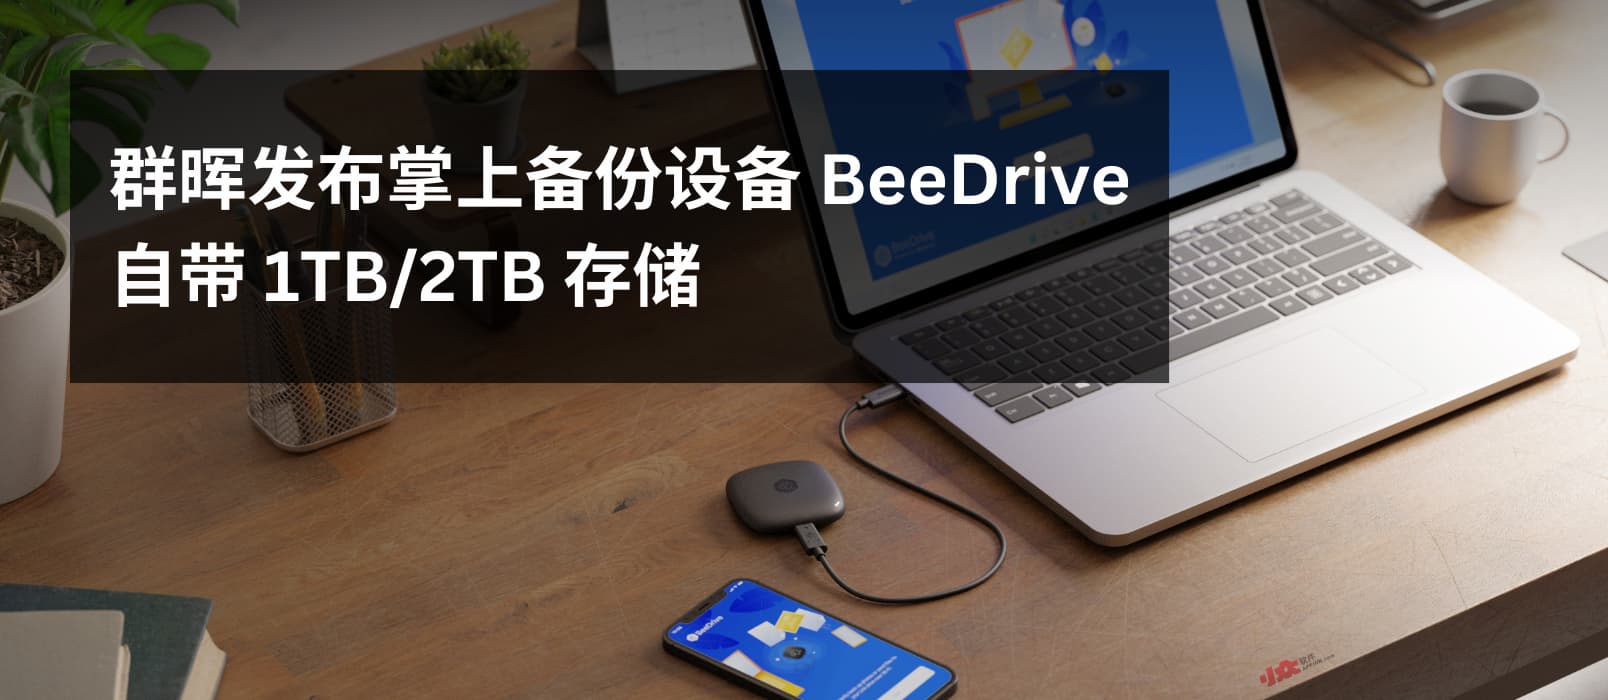 群晖发布掌上备份设备 BeeDrive，自带 1TB/2TB SSD 1